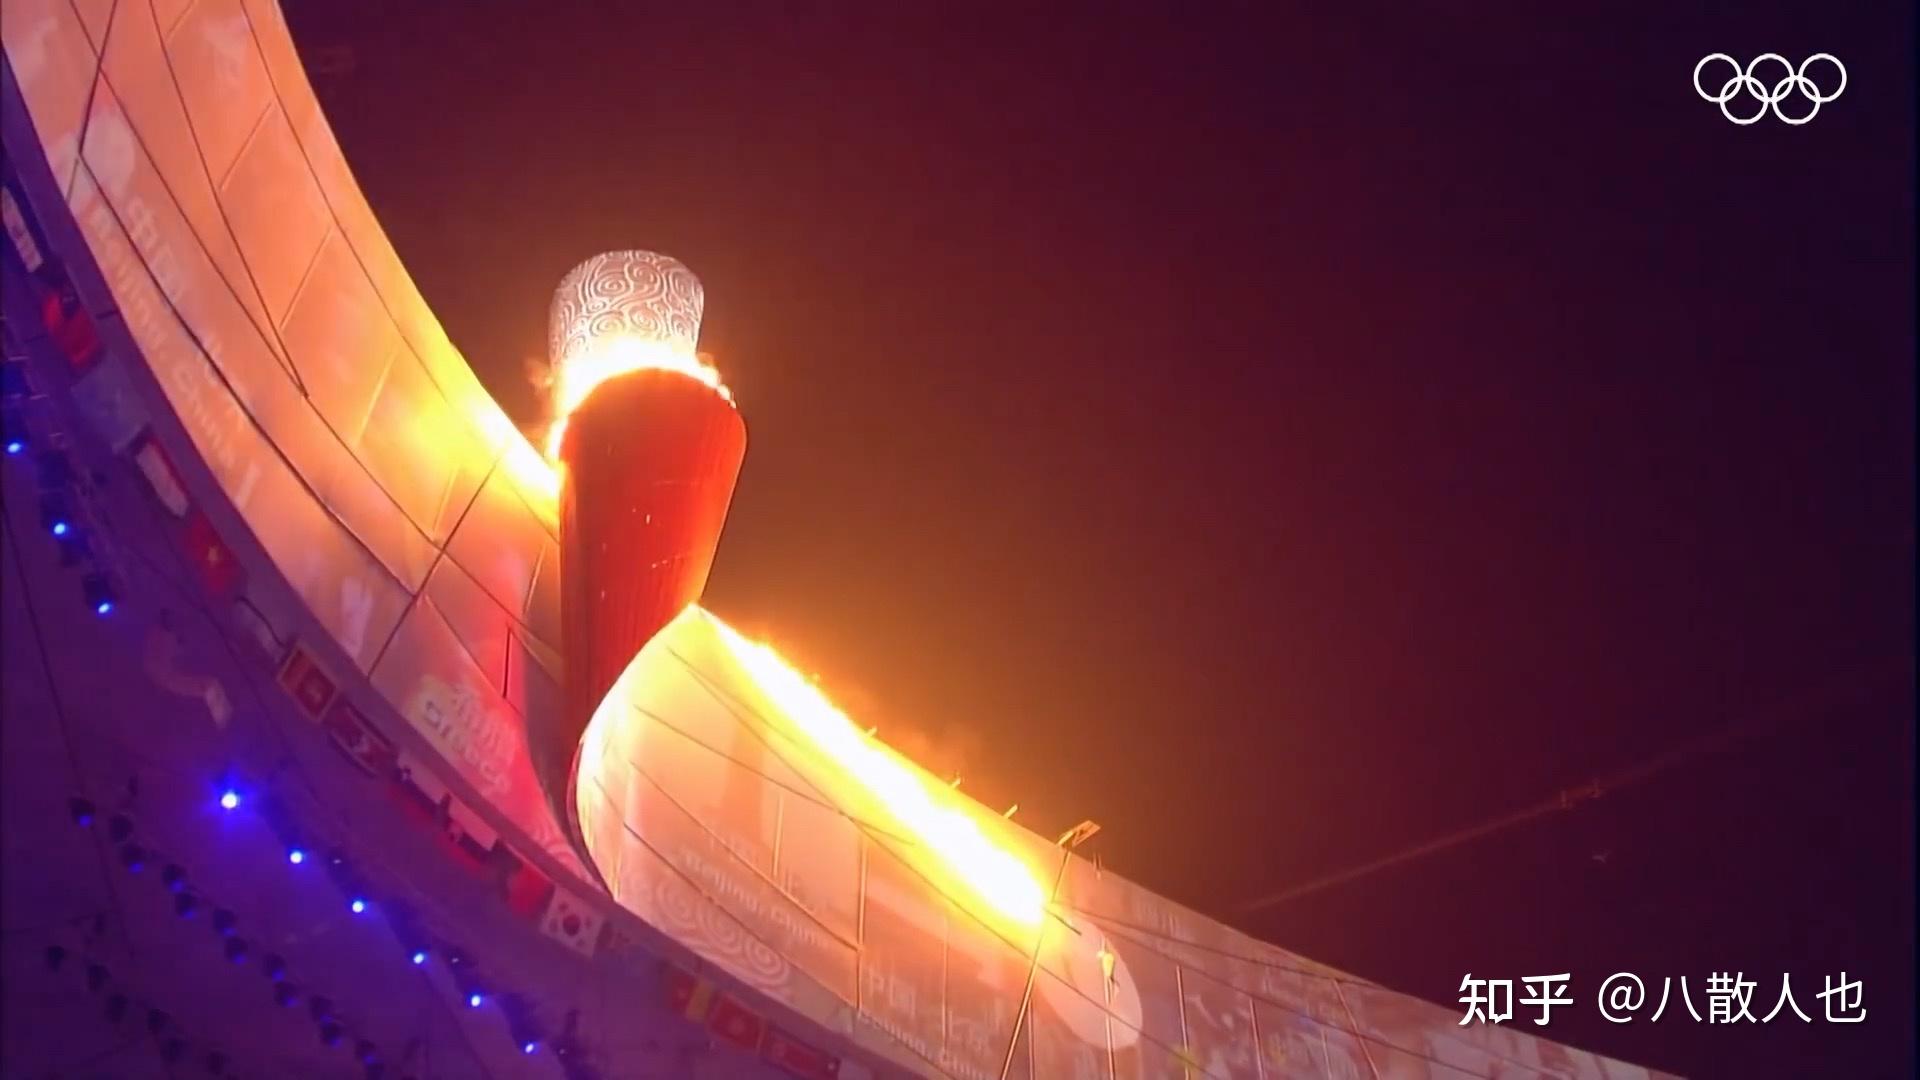 历史上的今天6月7日_2008年张韶涵受邀参与北京奥运会火炬传递，成为第一位台湾籍艺人火炬手。